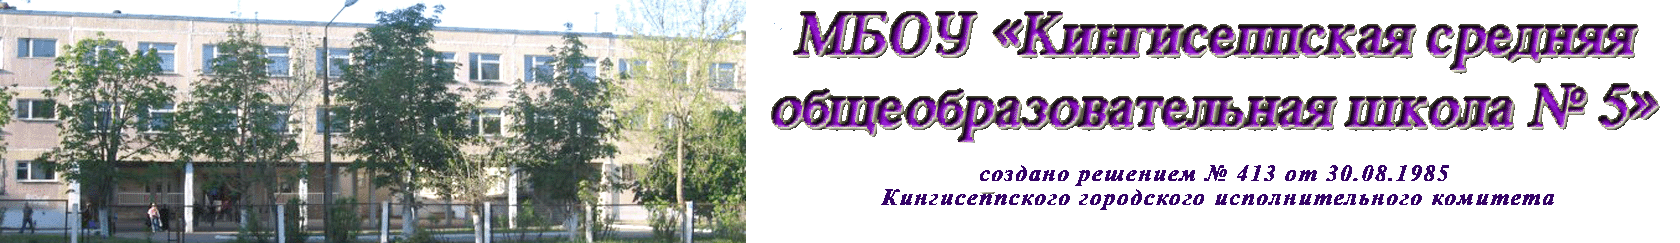 КСОШ № 5, МБОУ Логотип(logo)